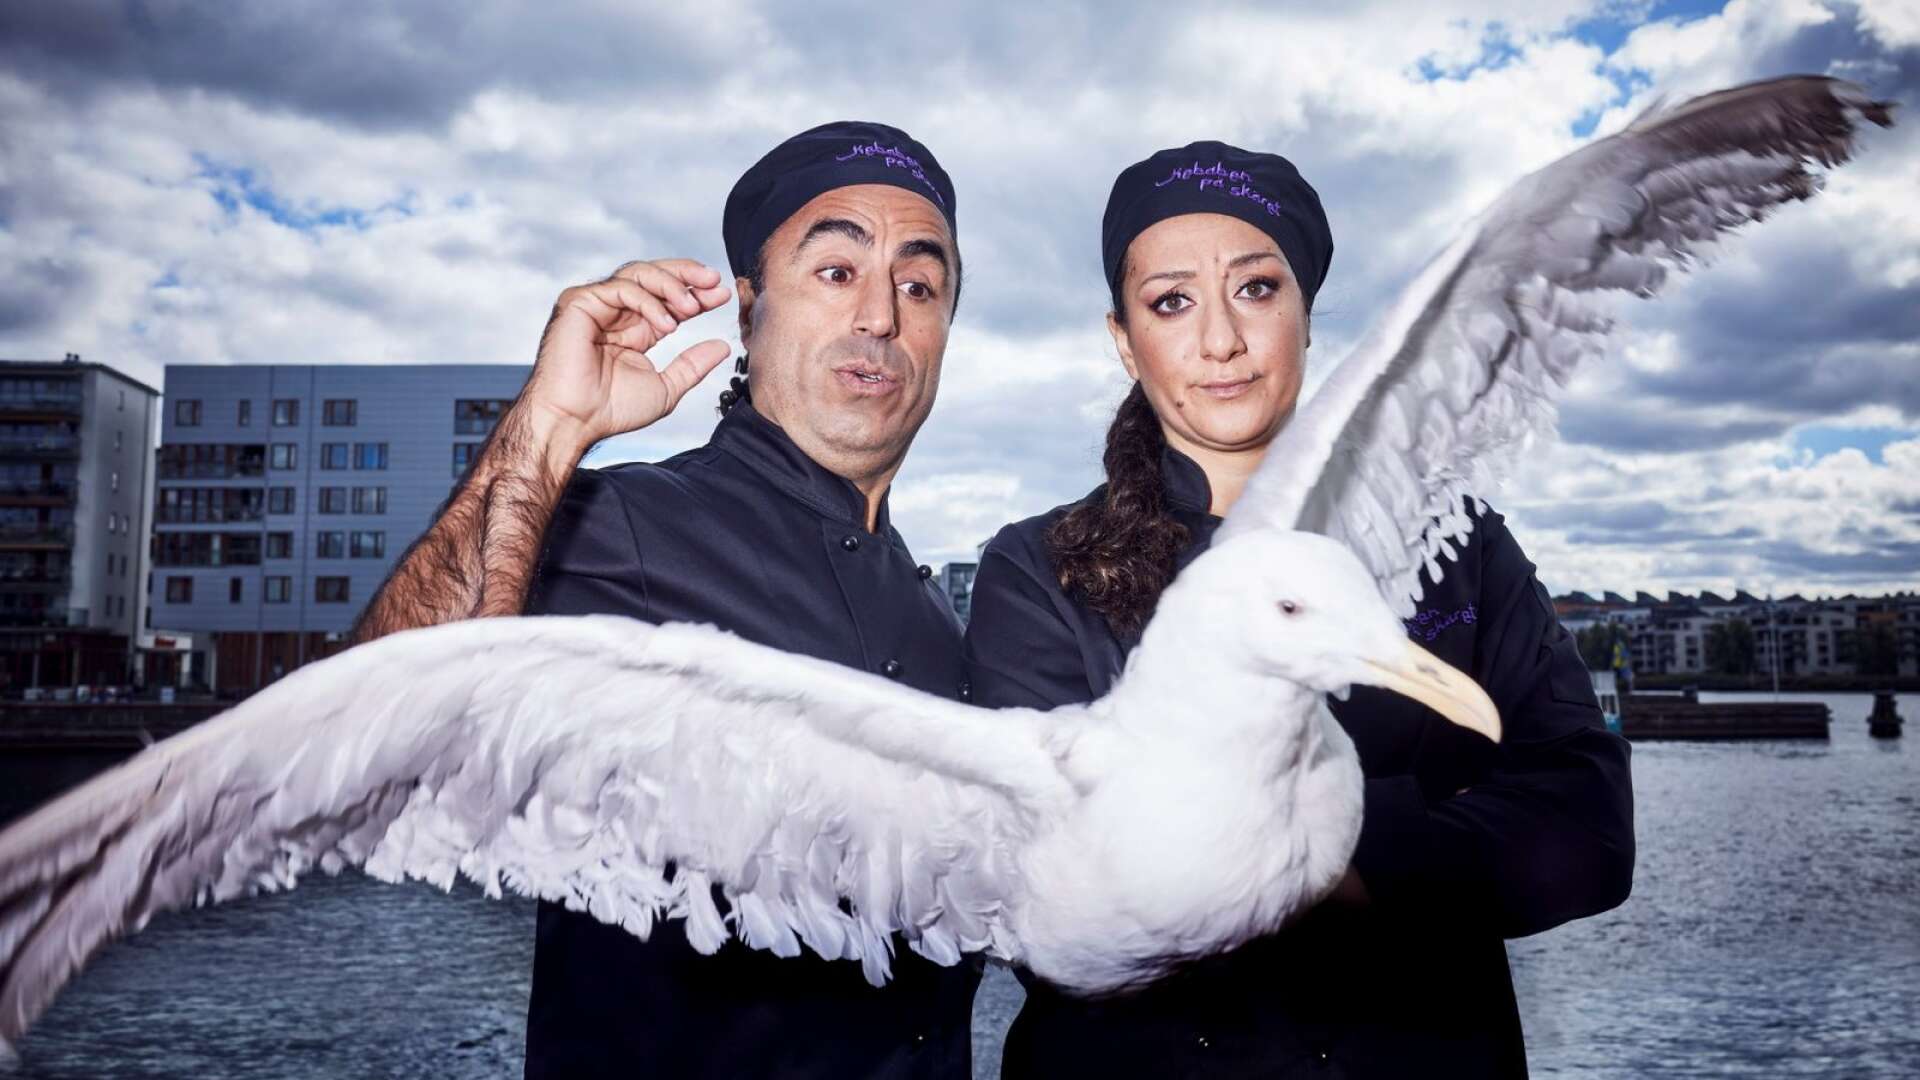 Özz Nûjen och Parwin Hoseinia spelar huvudrollerna i Kebaben på skäret, en komedi baserad på den sanna berättelsen om striden om en kebabrestaurang på Kungsholmen i Stockholm. Den 23 mars gästar de Kristinehamn och den 25 mars Karlstad.